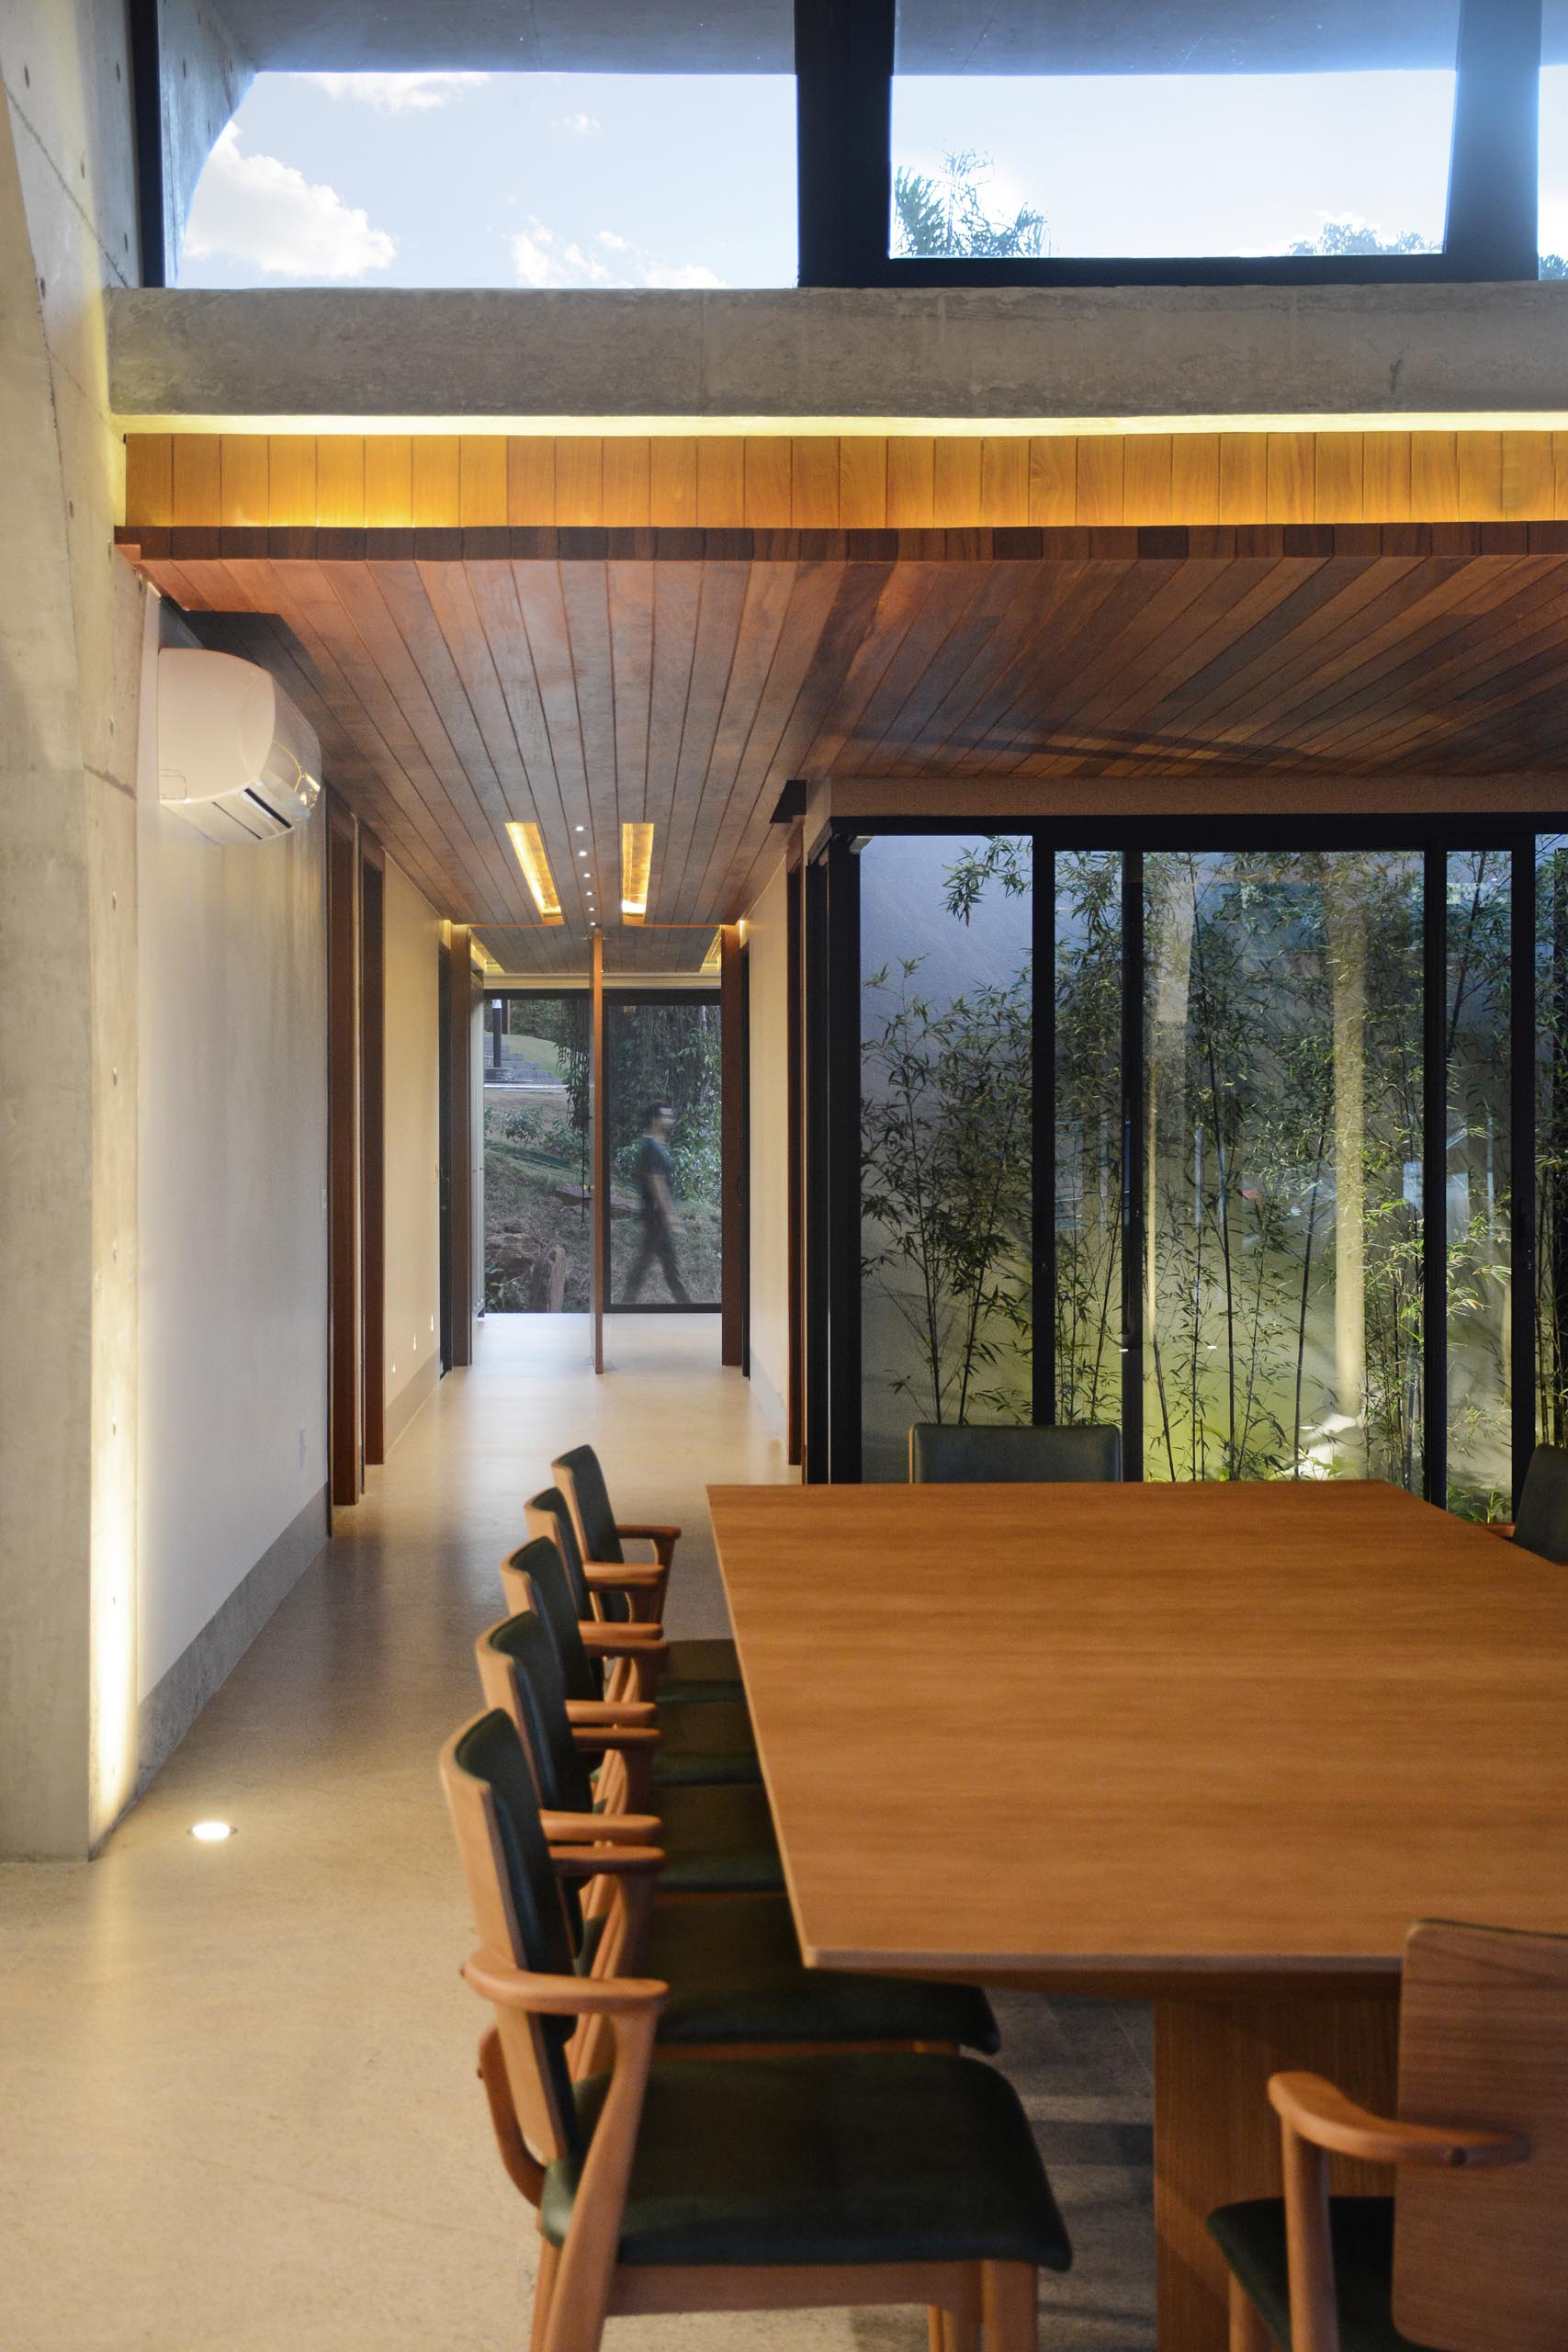 Поворотная входная дверь приветствует людей в доме, а деревянный потолок с подсветкой добавляет интерьеру ощущение тепла.